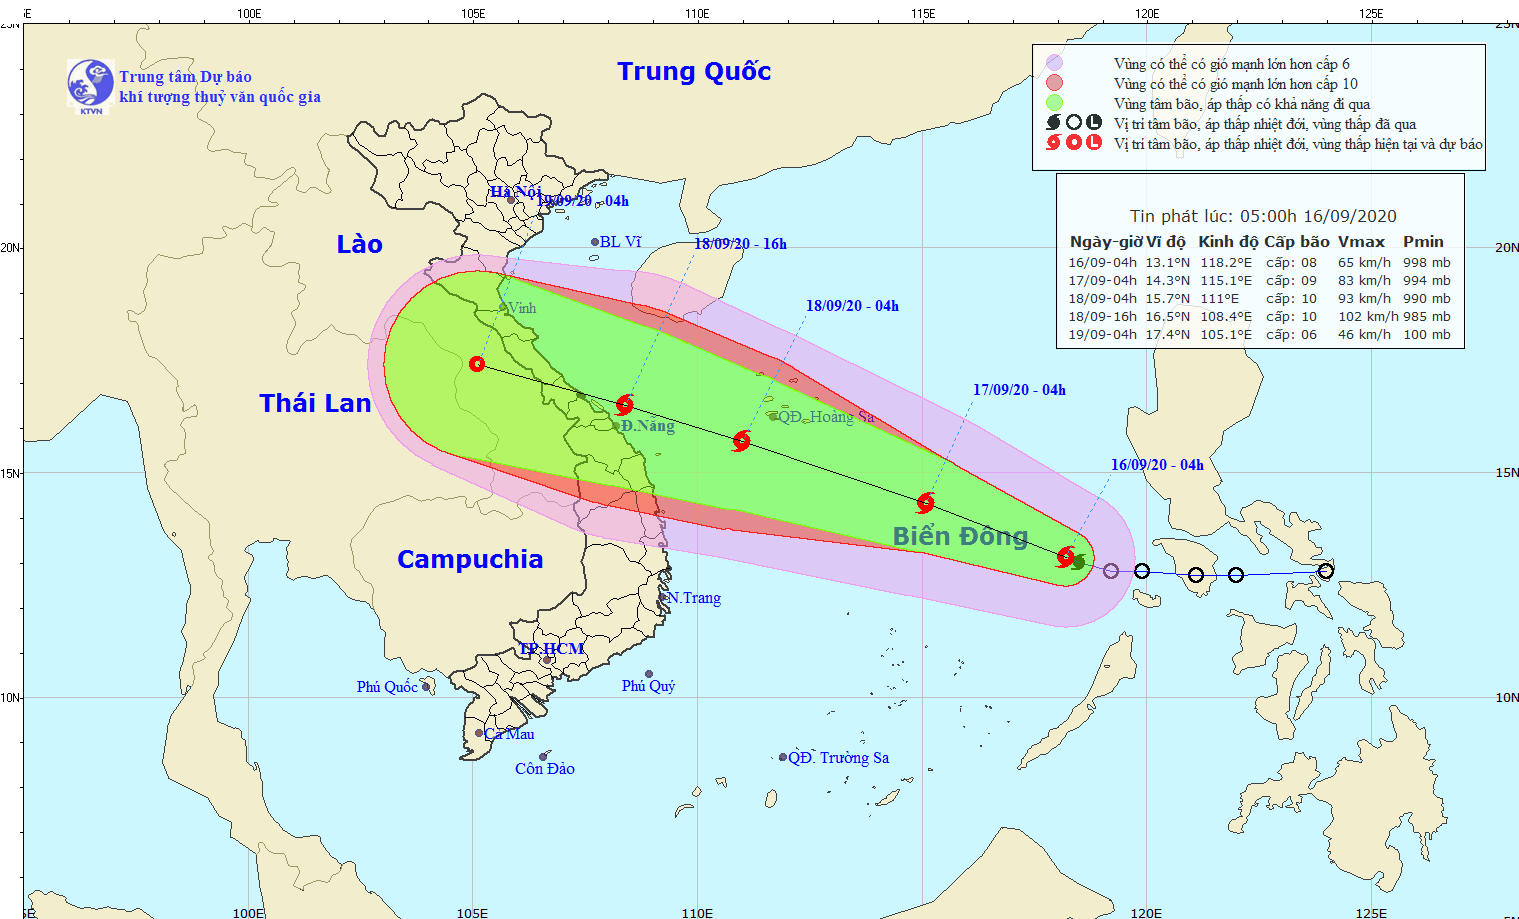 Tin cơn bão số 5 trên biển Đông